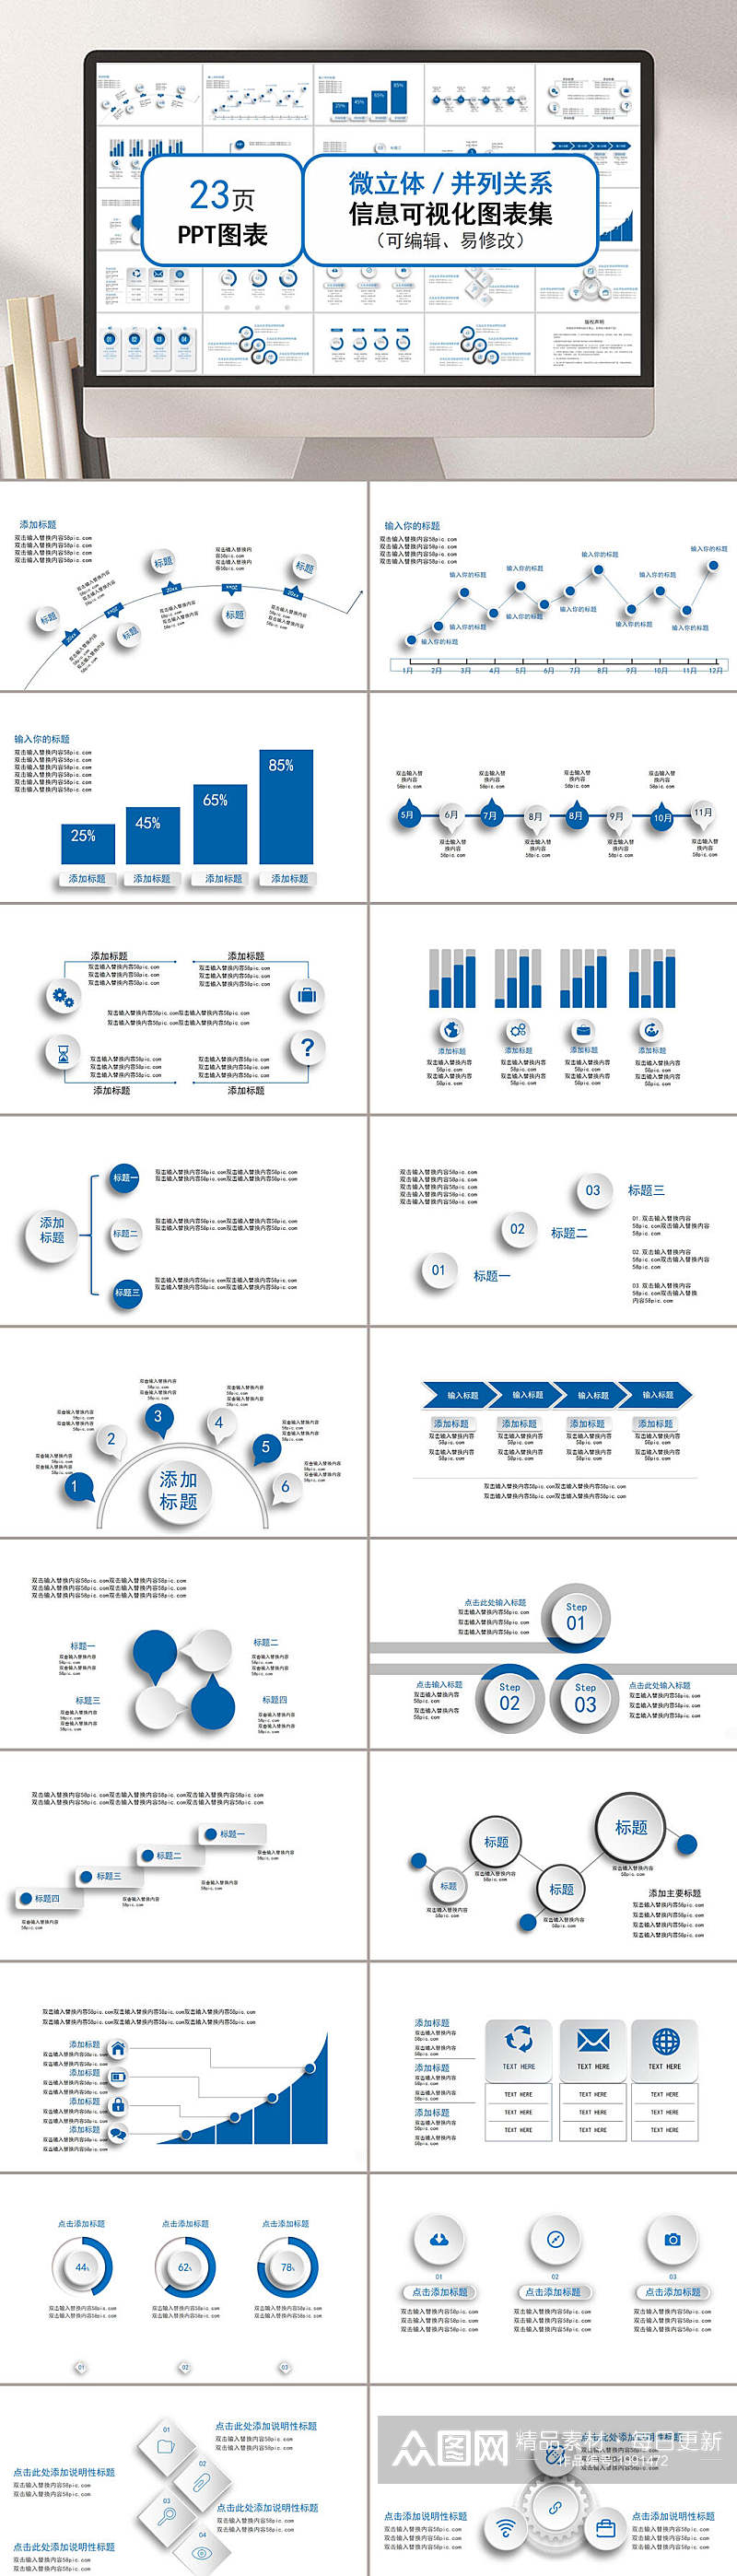 蓝色信息化可视流程图表企业ppt素材